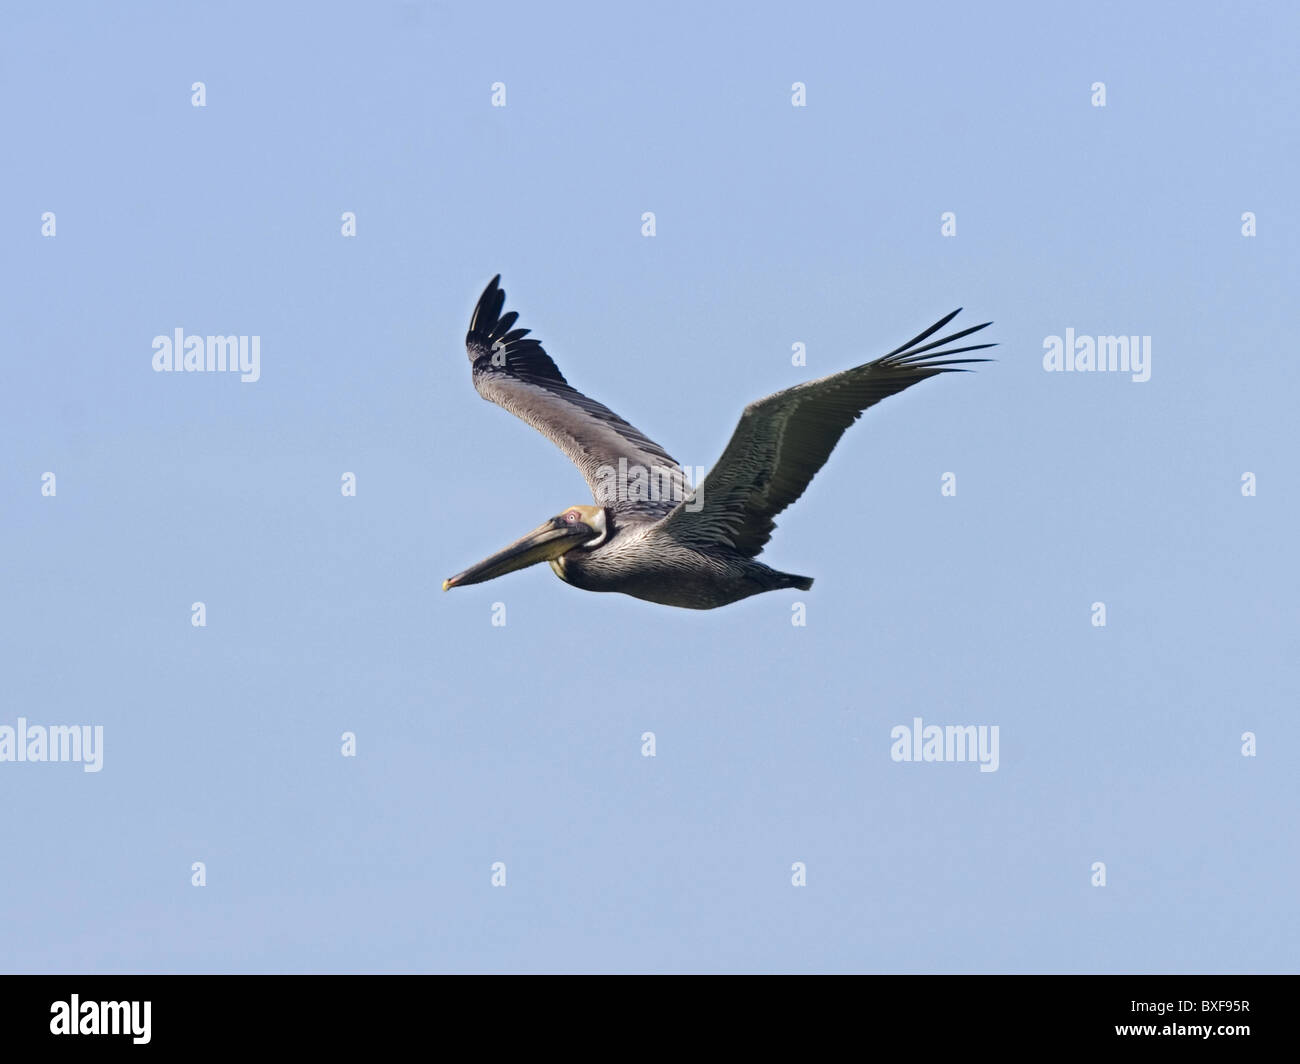 Brown pelican in flight Stock Photo